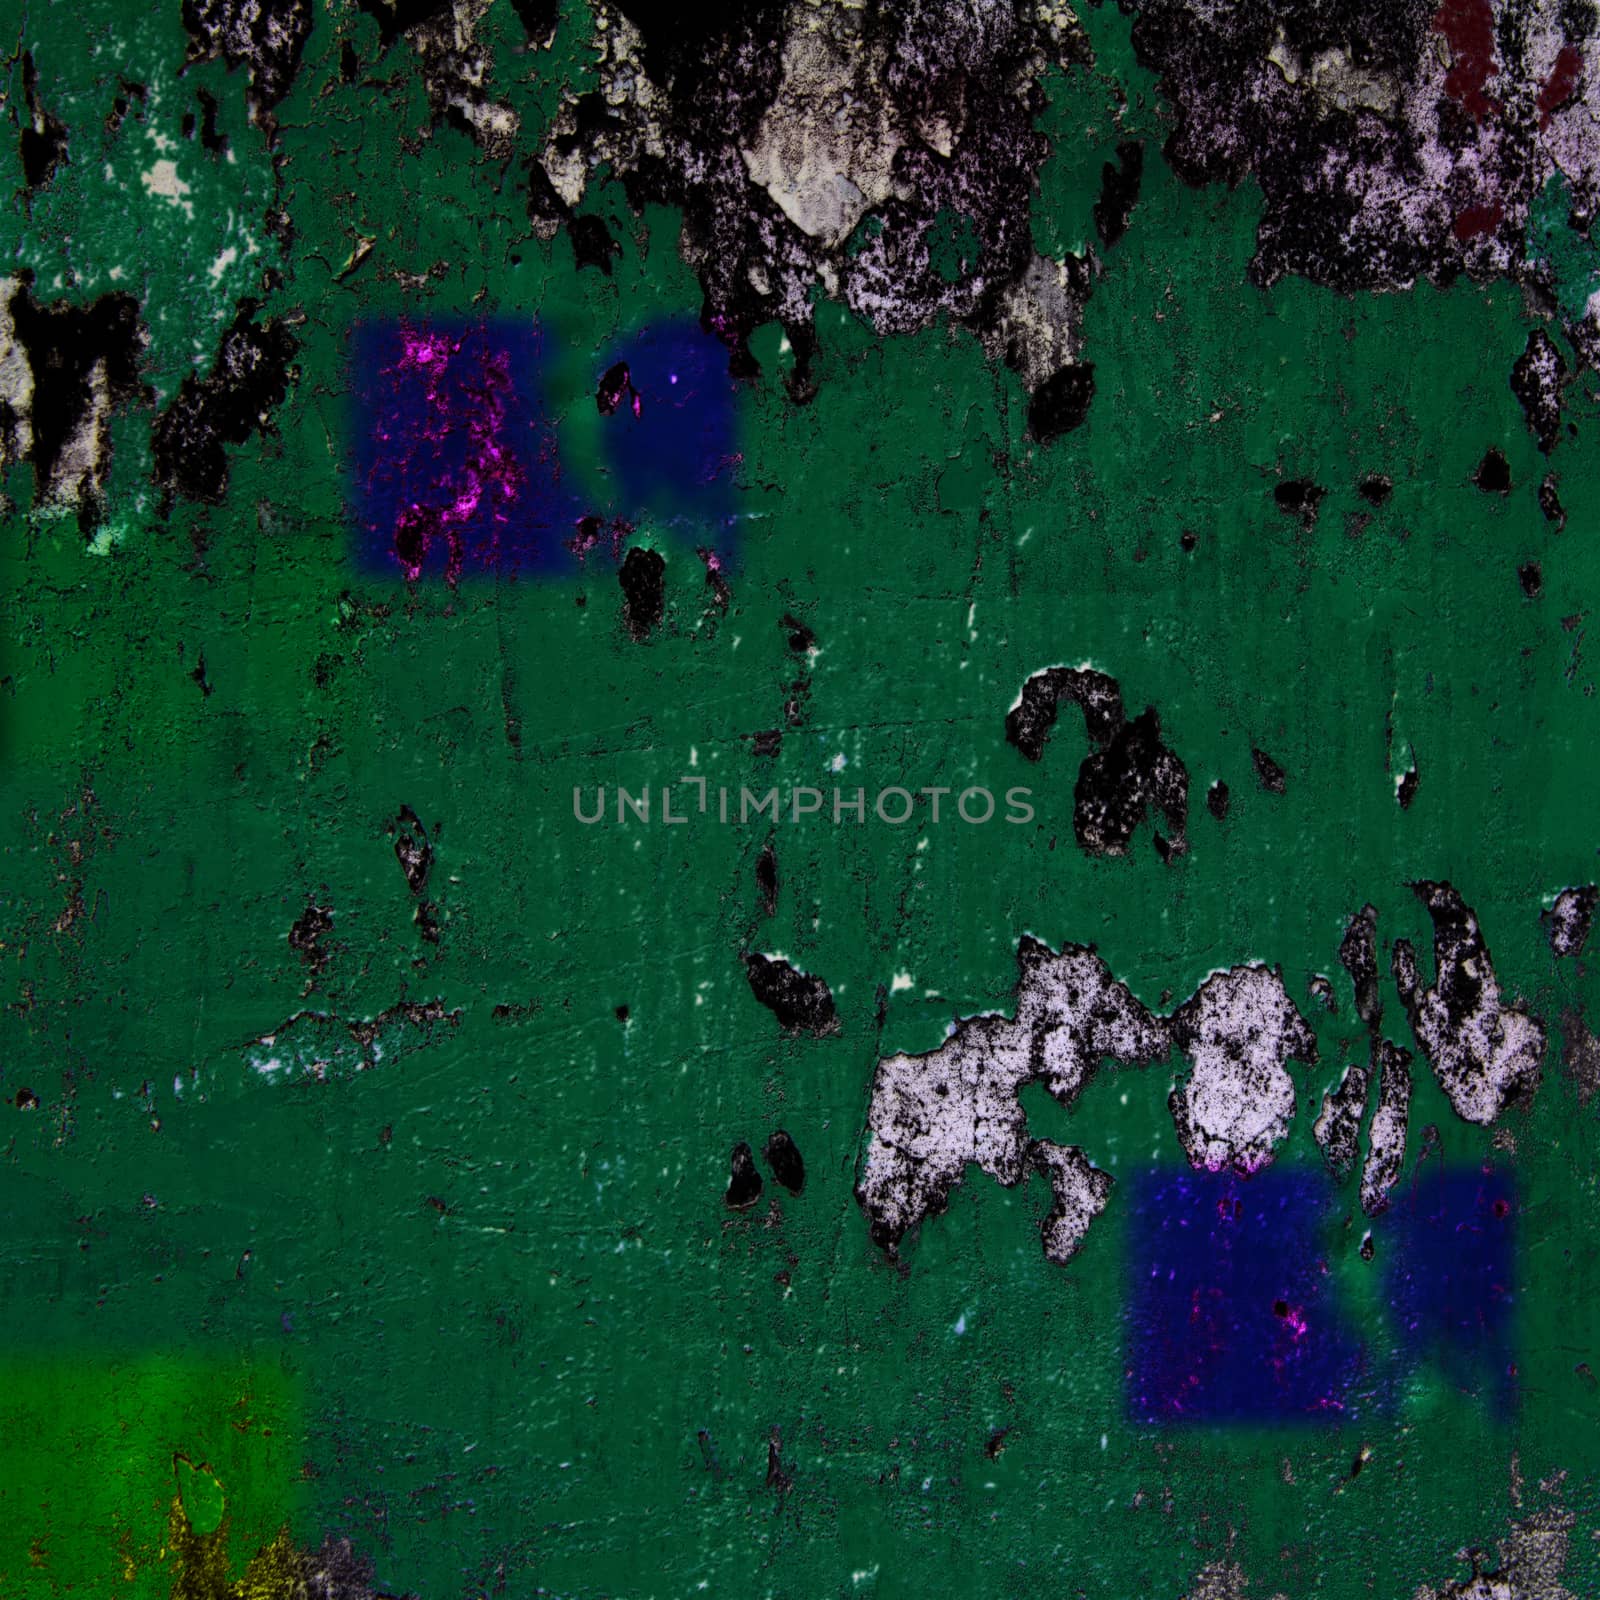 Abstract grunge green wall  by wyoosumran